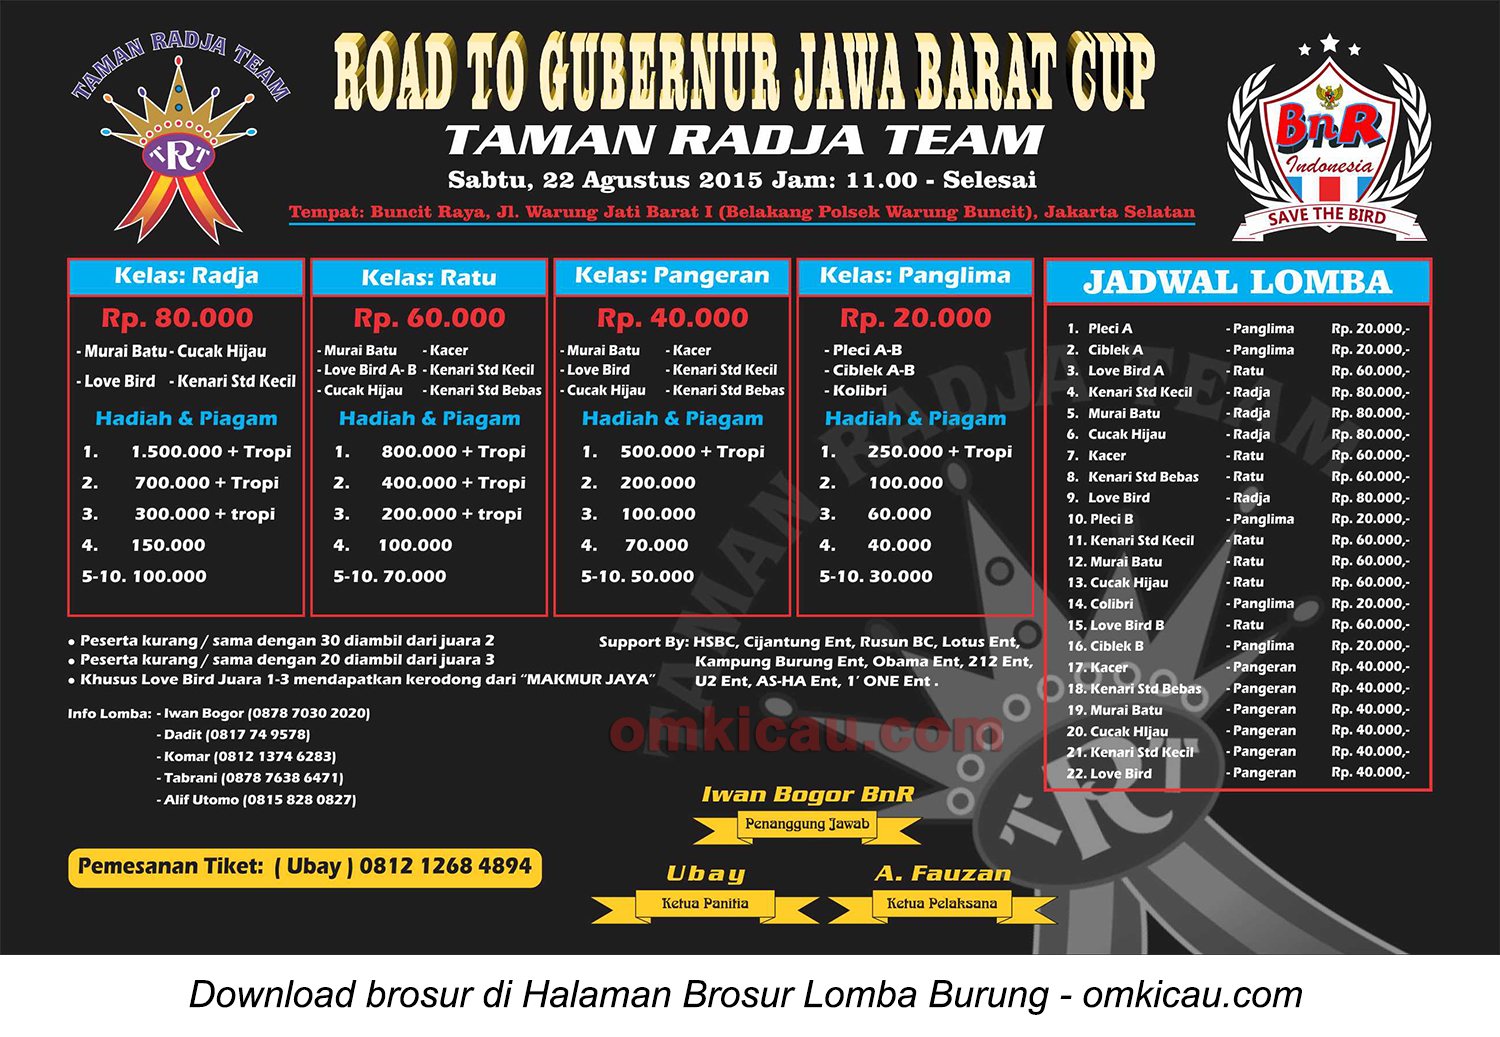 Brosur Lomba Burung Berkicau Road to Gubernur Jawa Barat Cup, Jakarta Selatan, 22 Agustus 2015